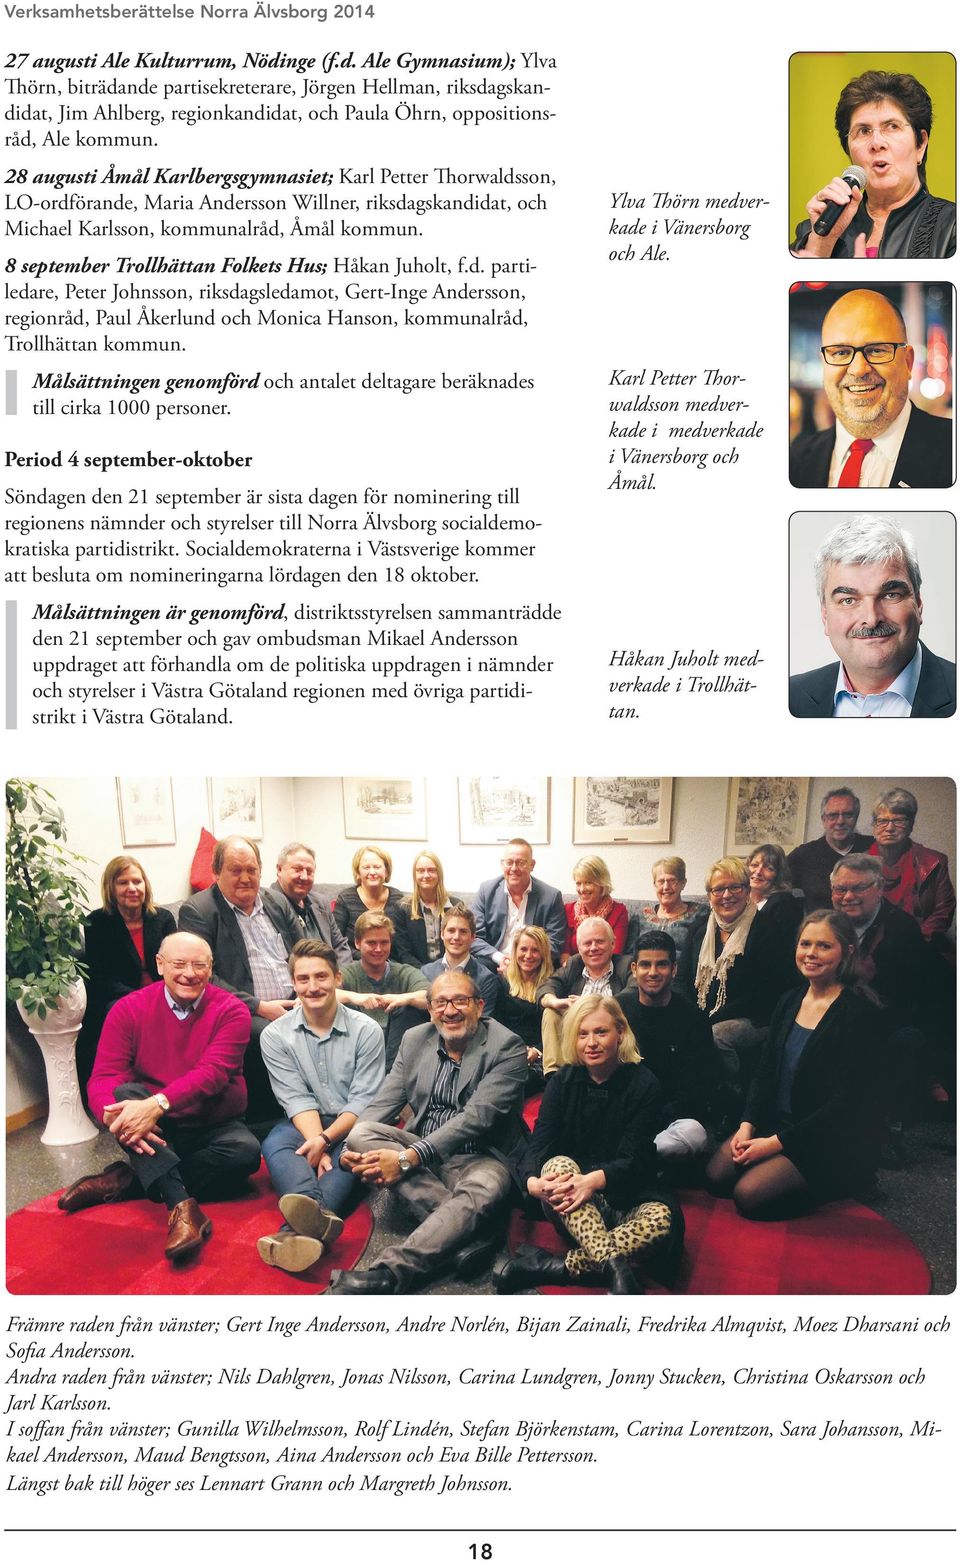 28 augusti Åmål Karlbergsgymnasiet; Karl Petter Thorwaldsson, LO-ordförande, Maria Andersson Willner, riksdagskandidat, och Michael Karlsson, kommunalråd, Åmål kommun.